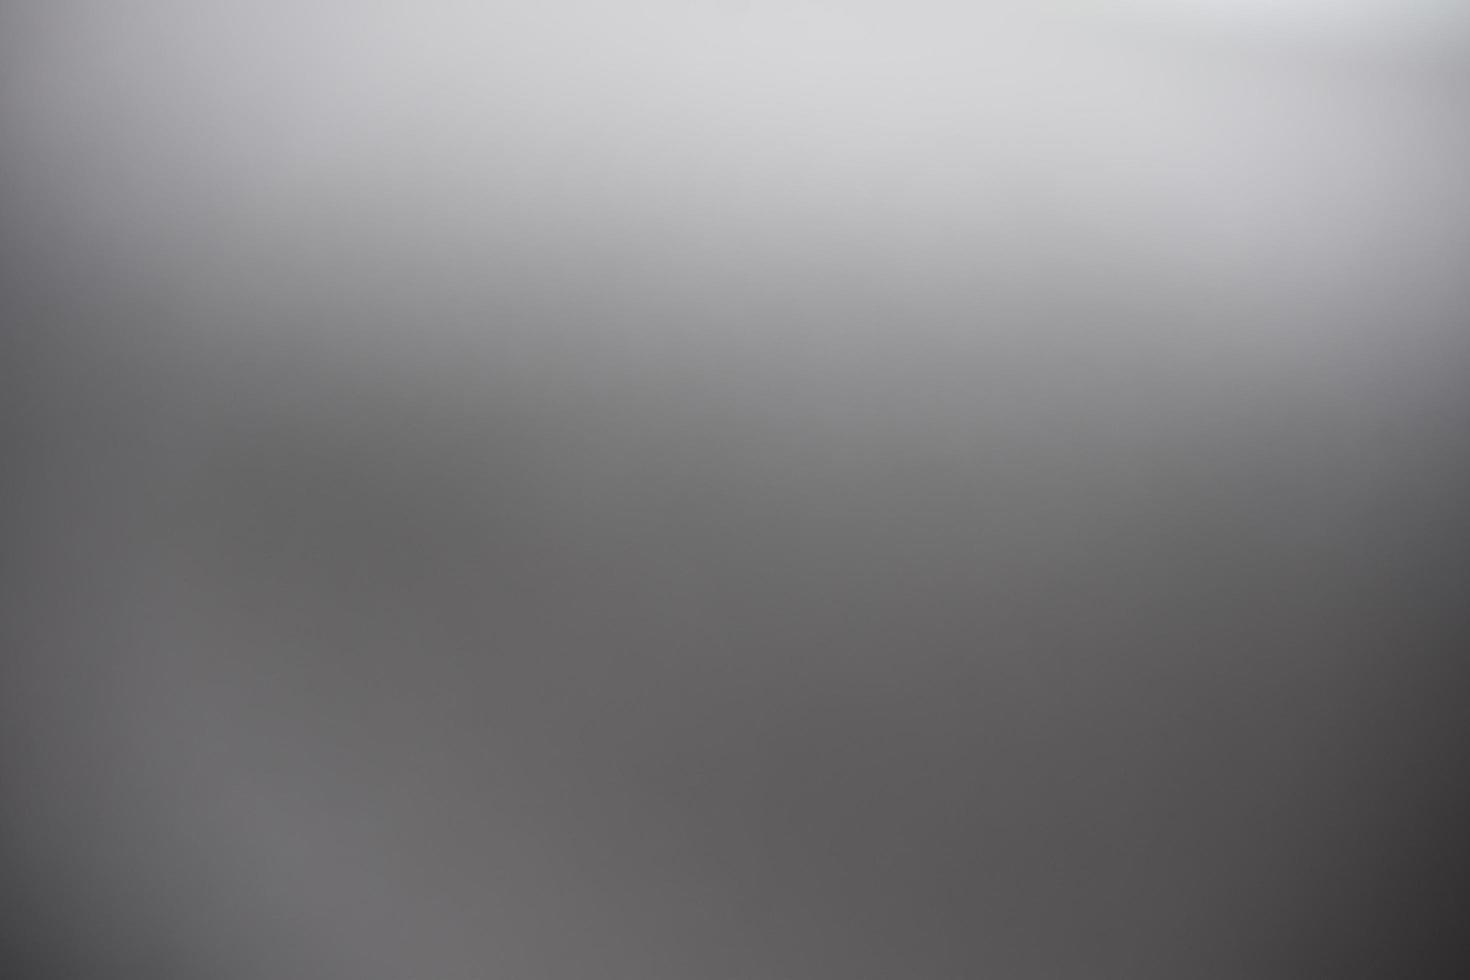 Abstract gray shiny texture background. photo